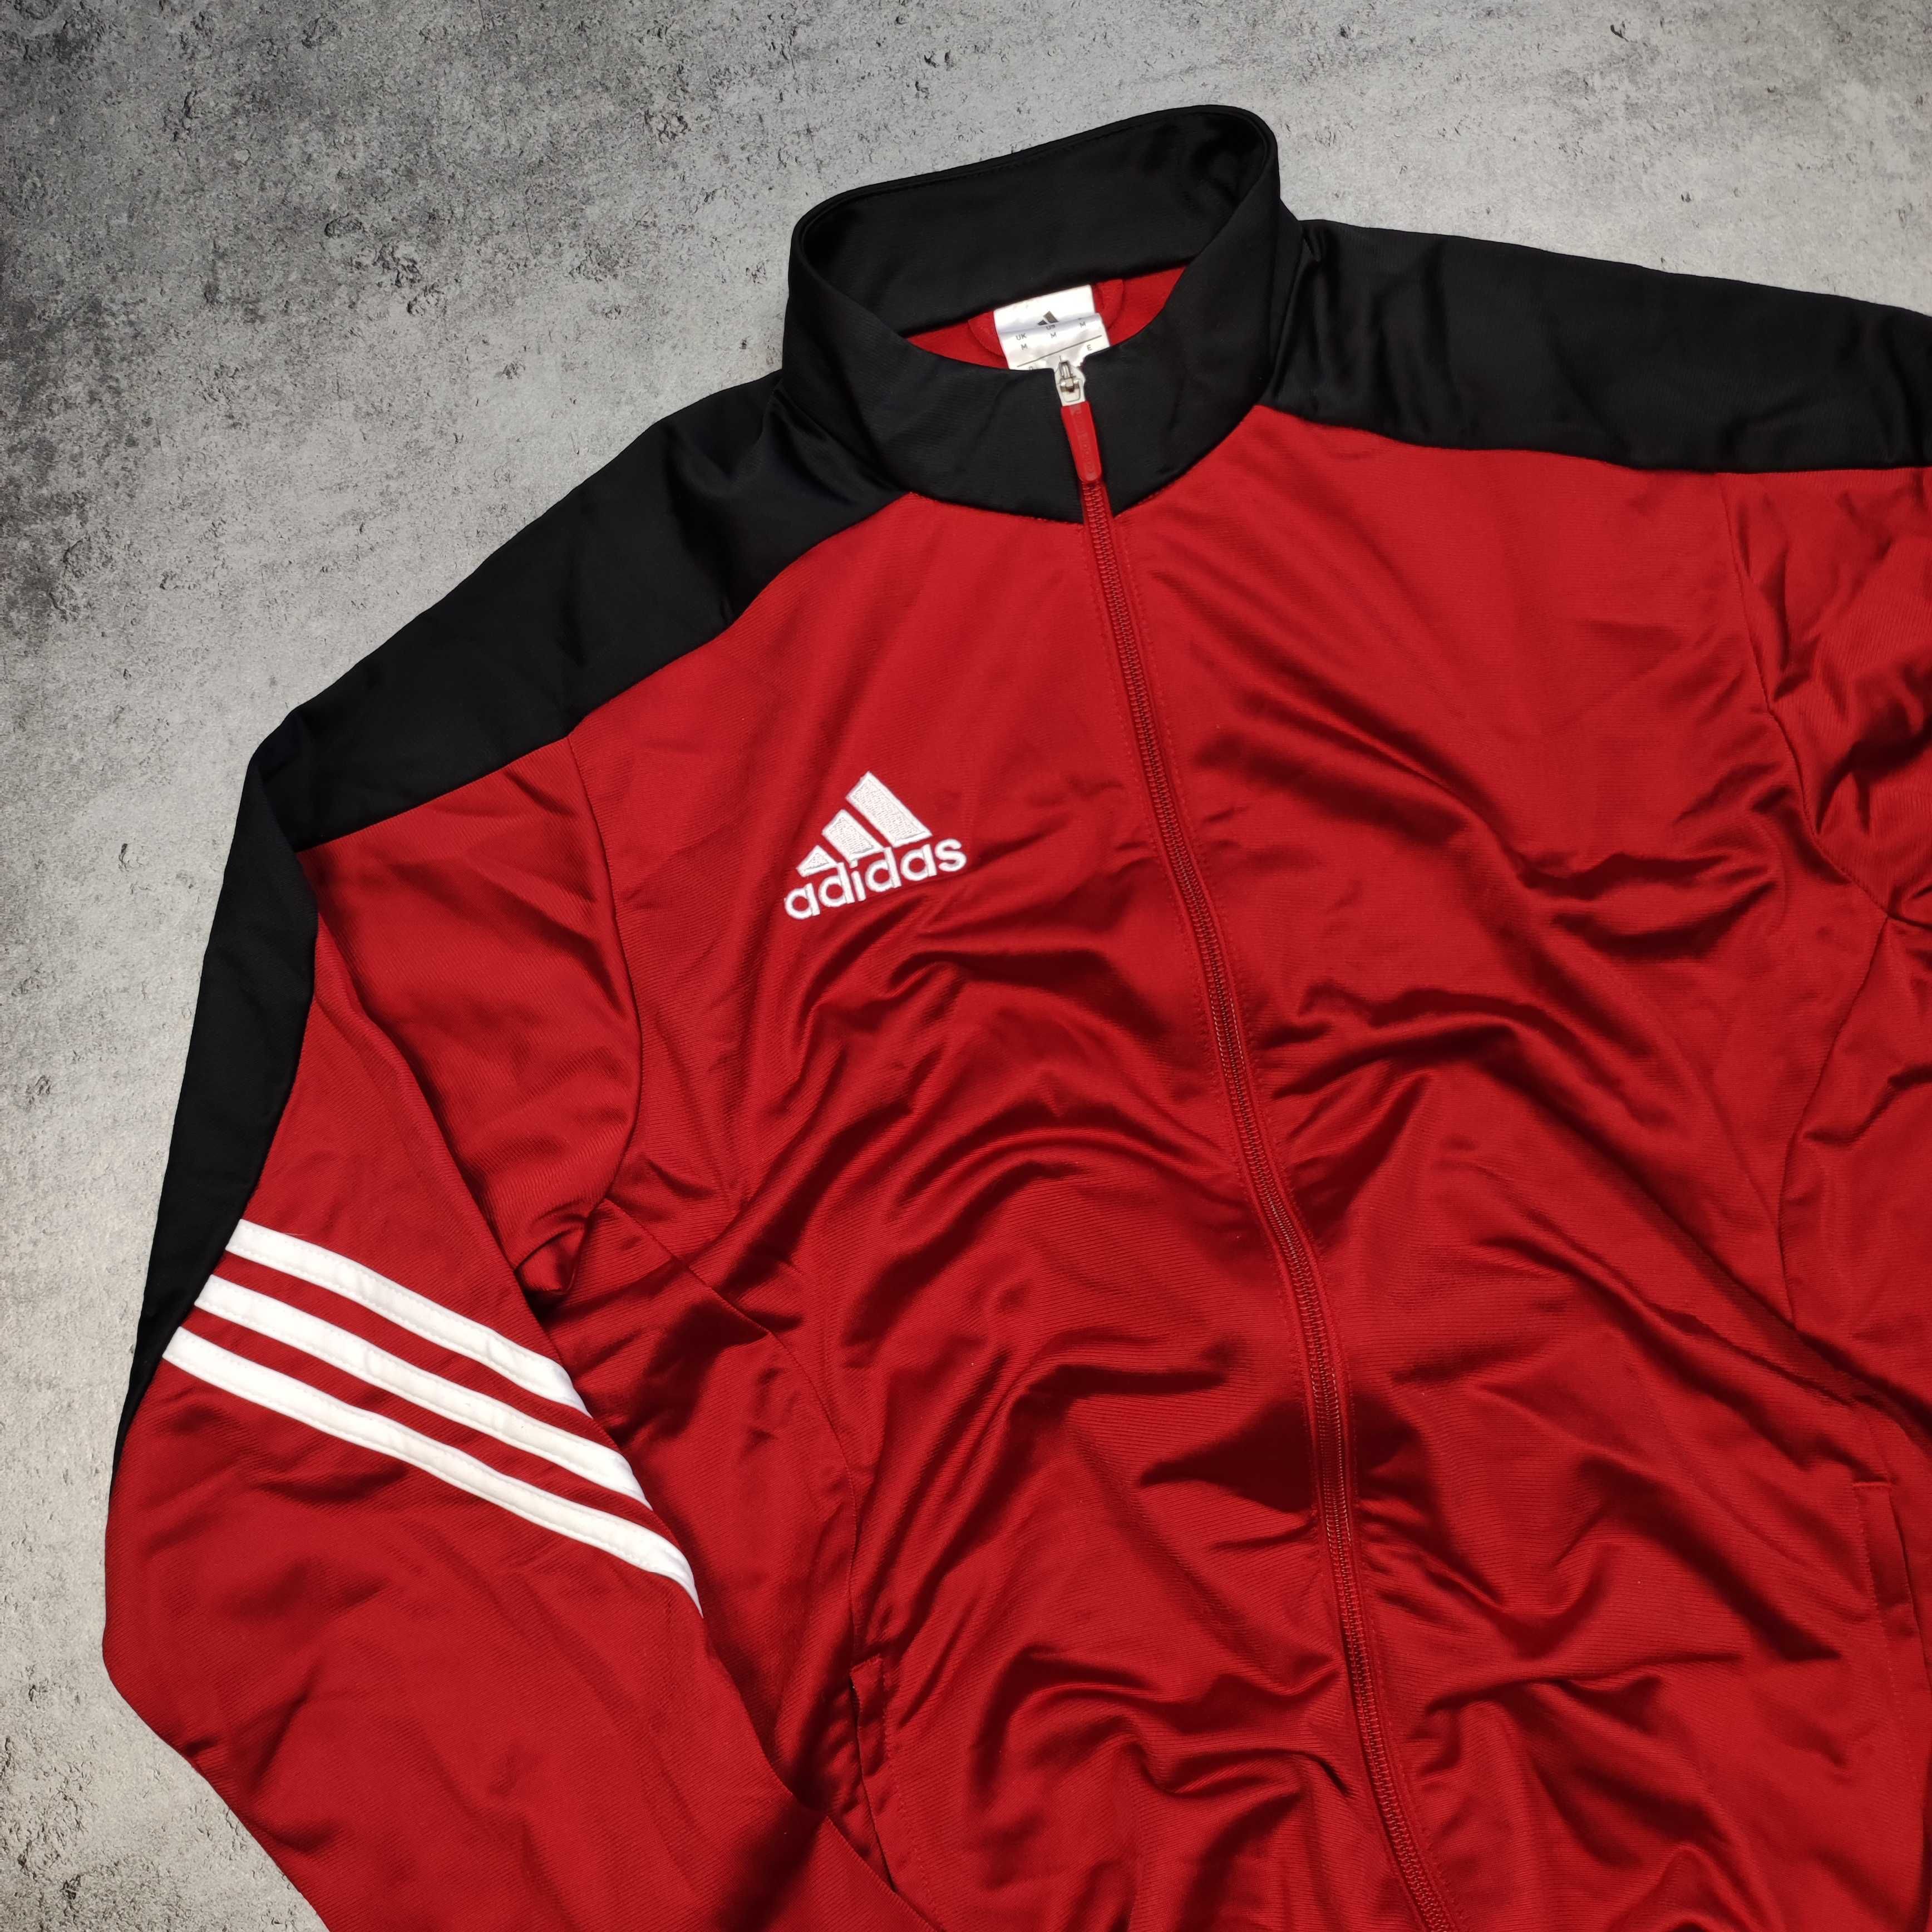 MĘSKA Bluza Rozpinana Sportowa Adidas Czerwona Piłka Nożna Bieganie